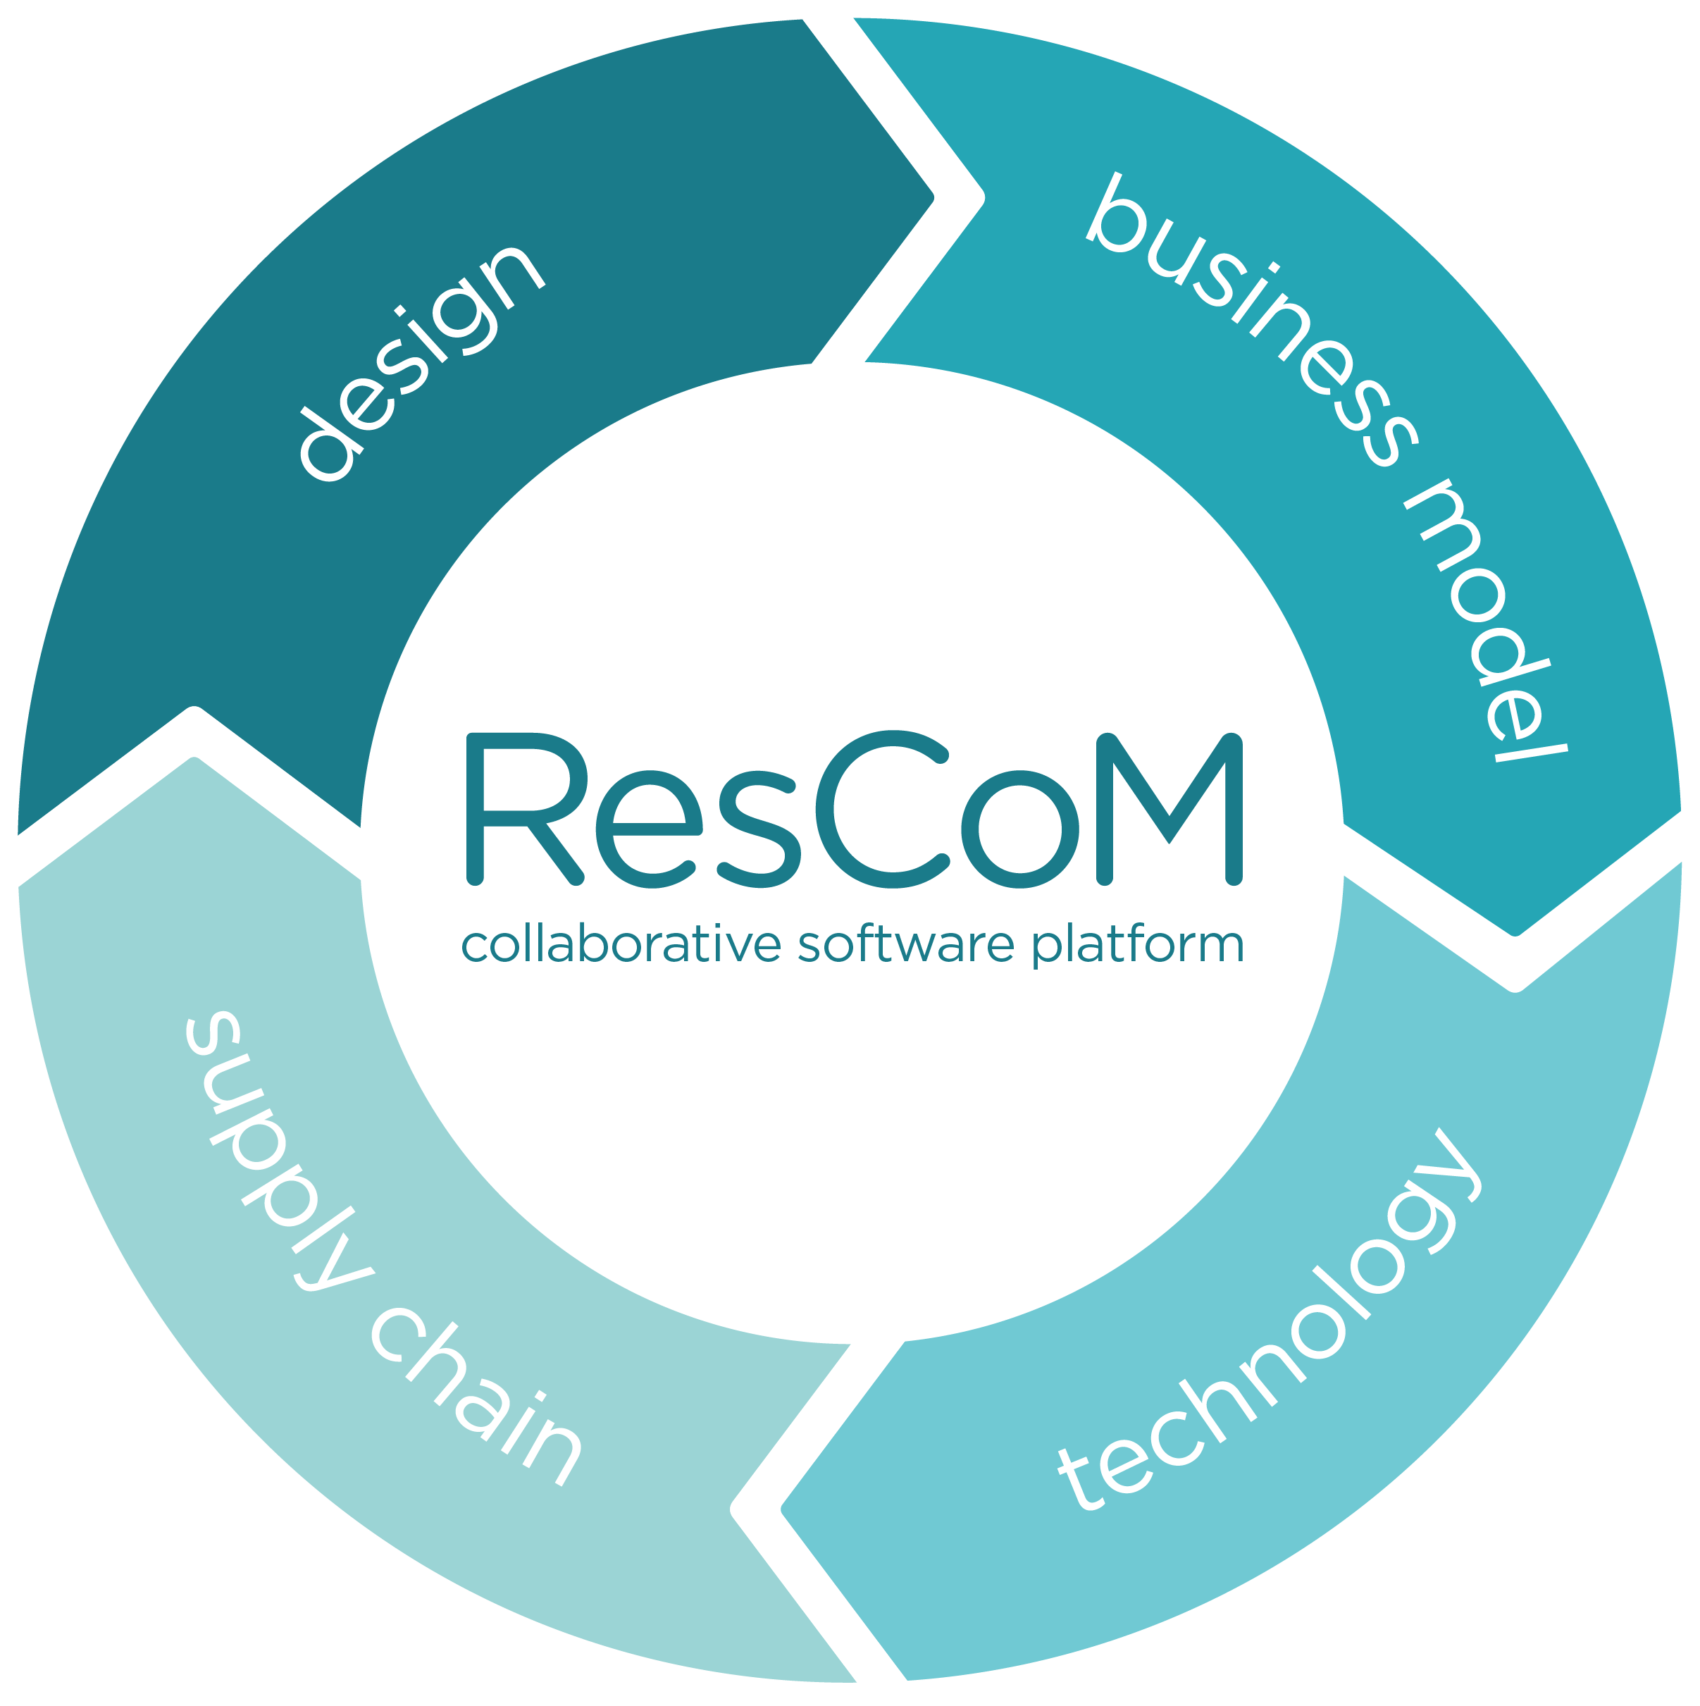 ResCoM circle diagram